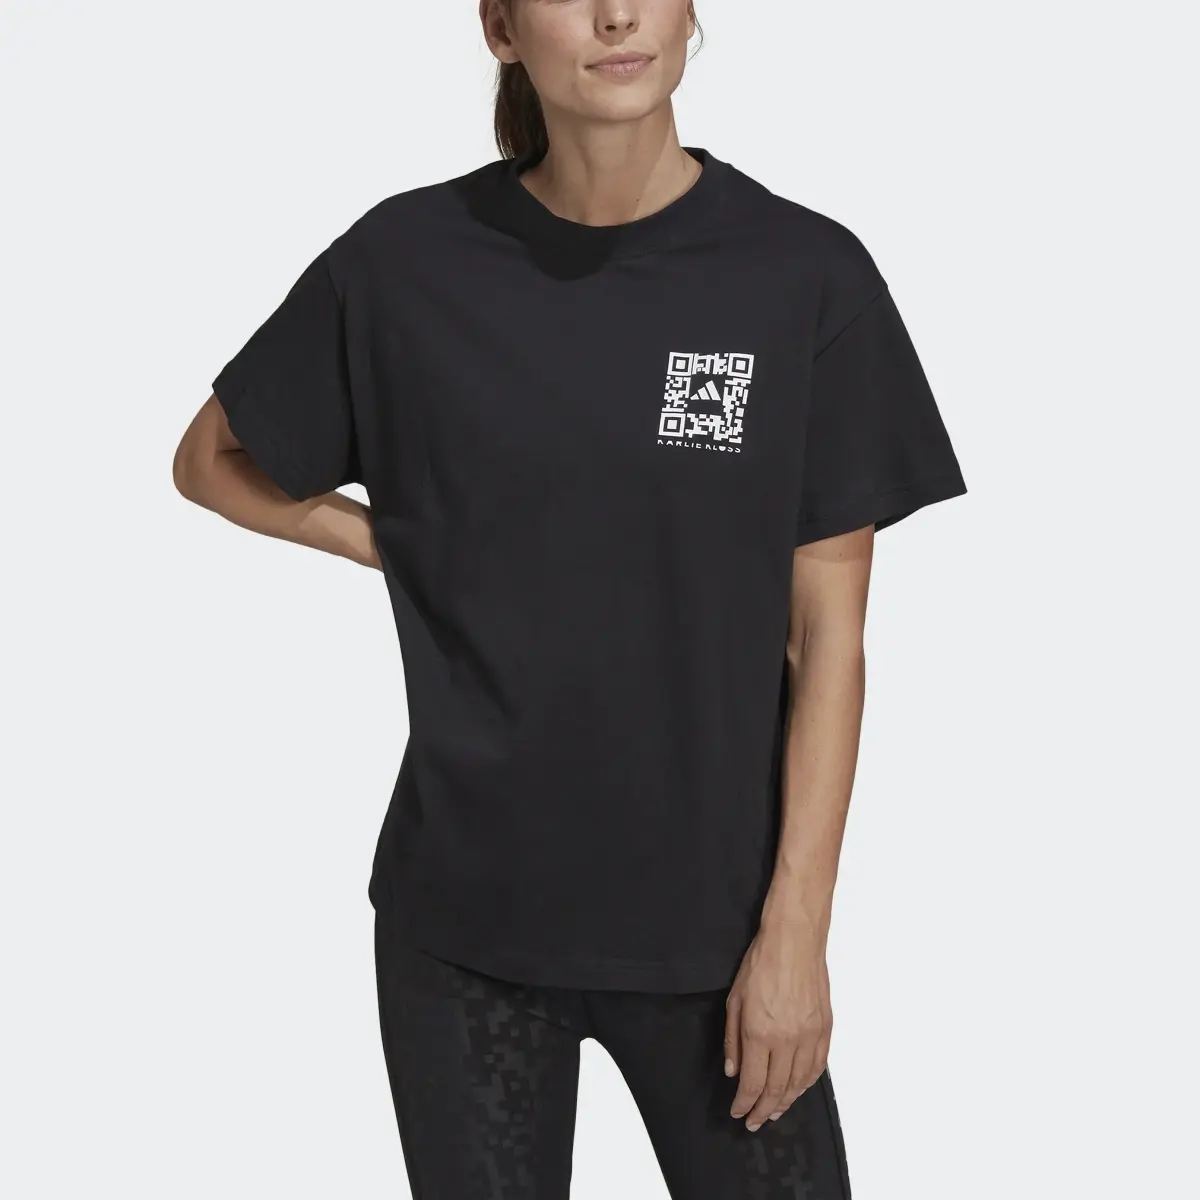 Adidas x Karlie Kloss Crop T-Shirt. 1